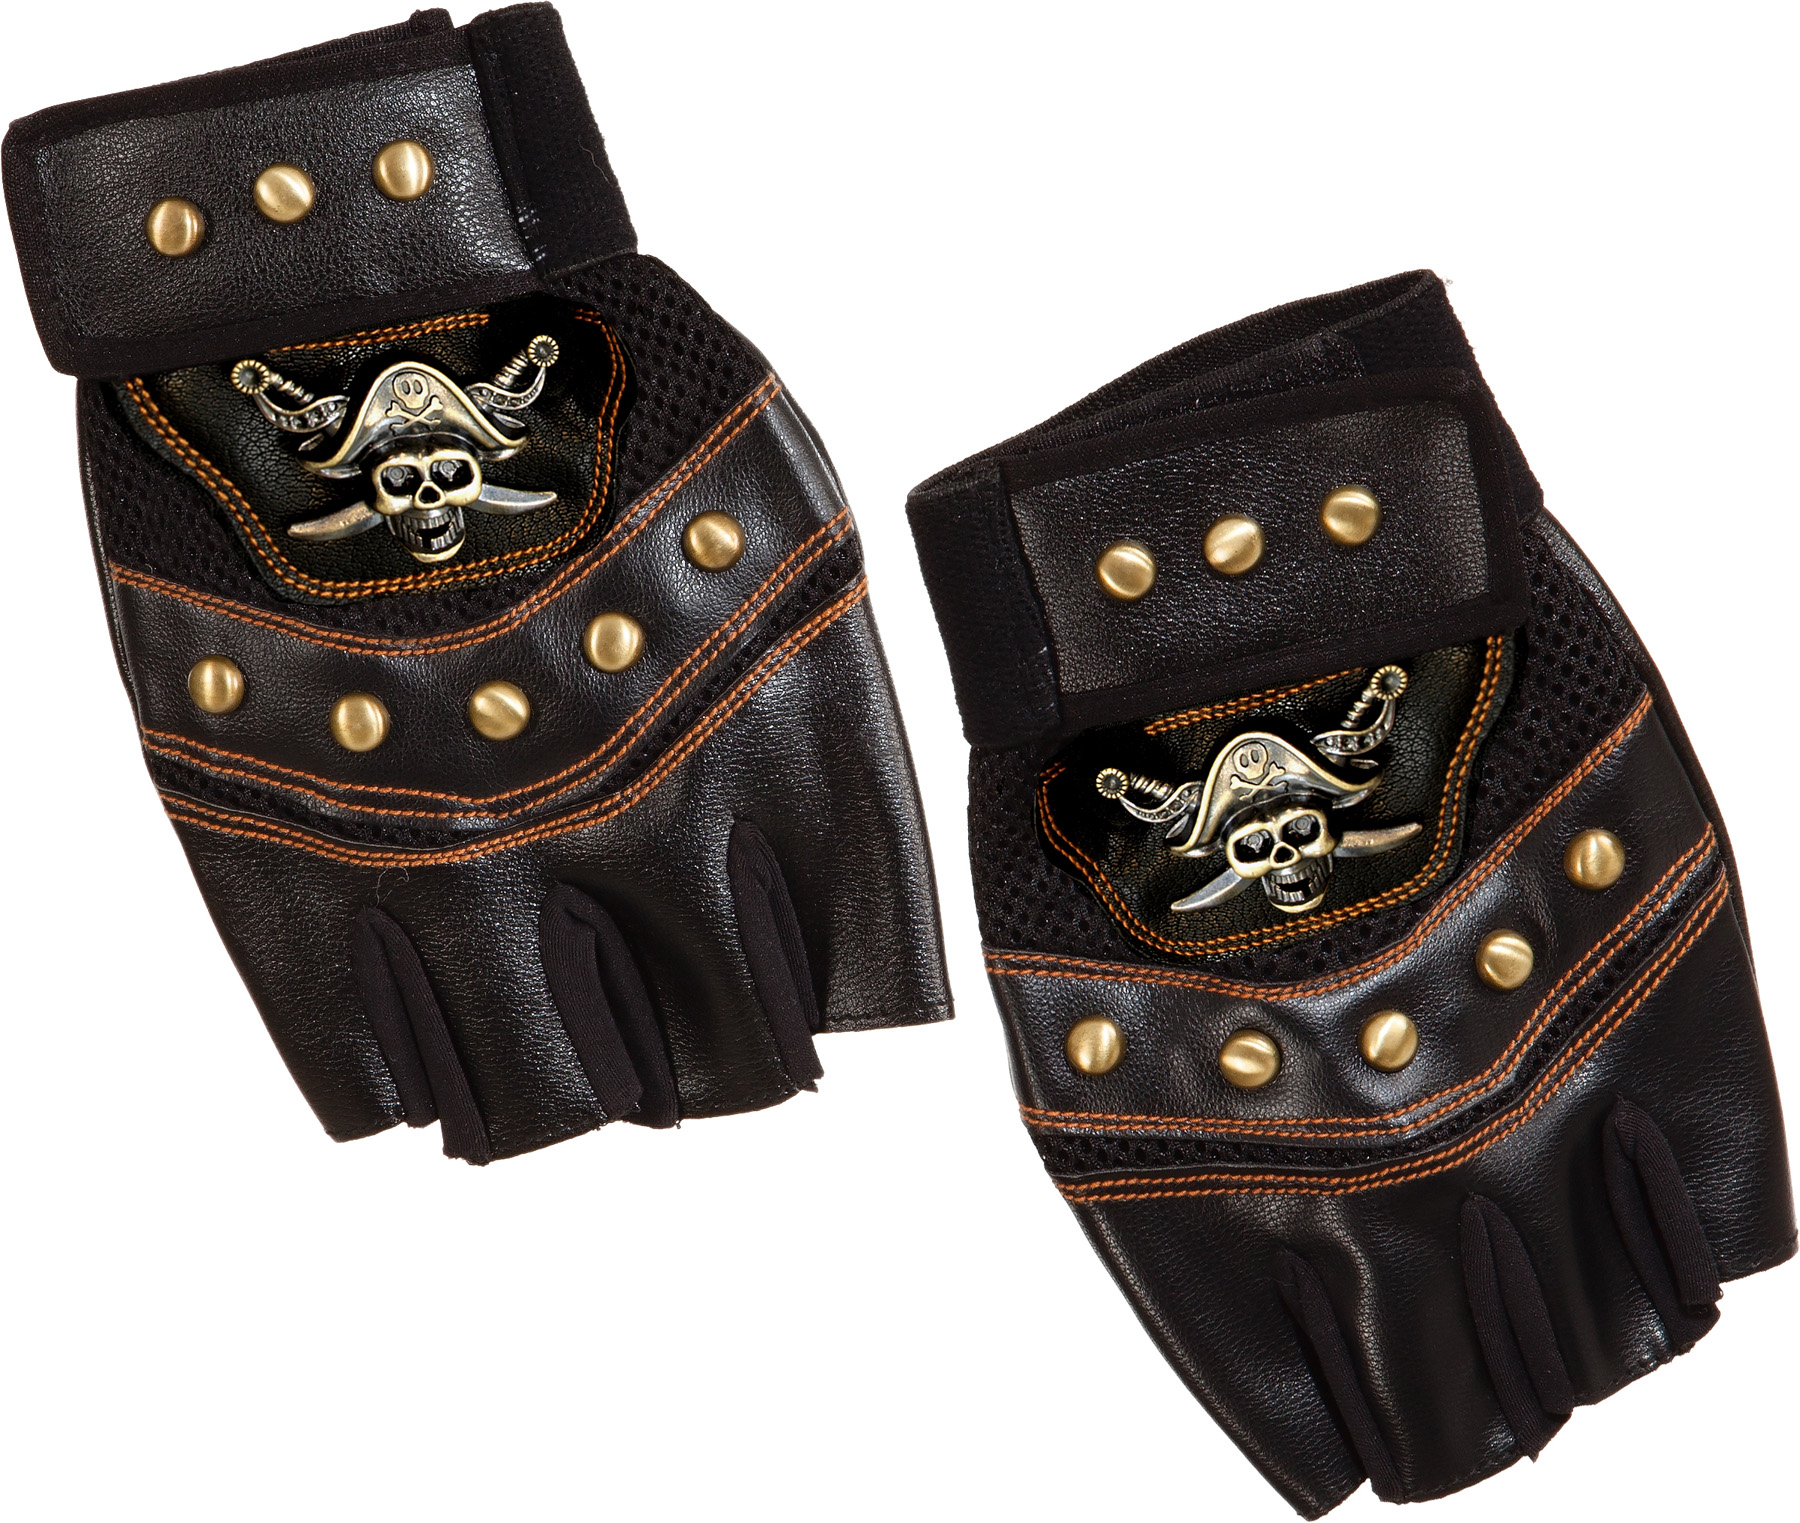 Piraten-Handschuhe de Luxe fingerlos